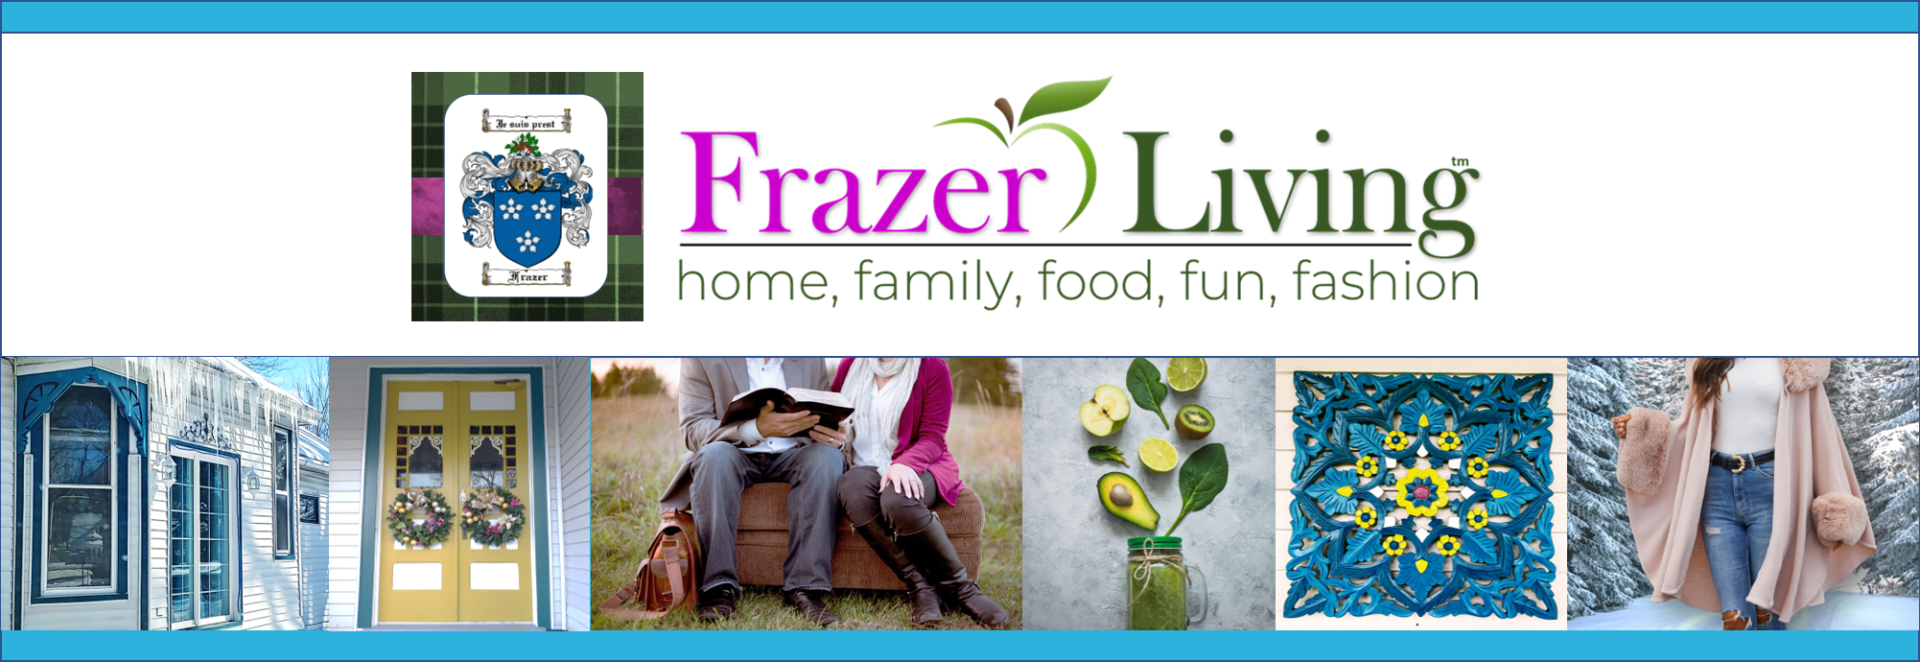 FRAZER LIVING - Facebook Banner